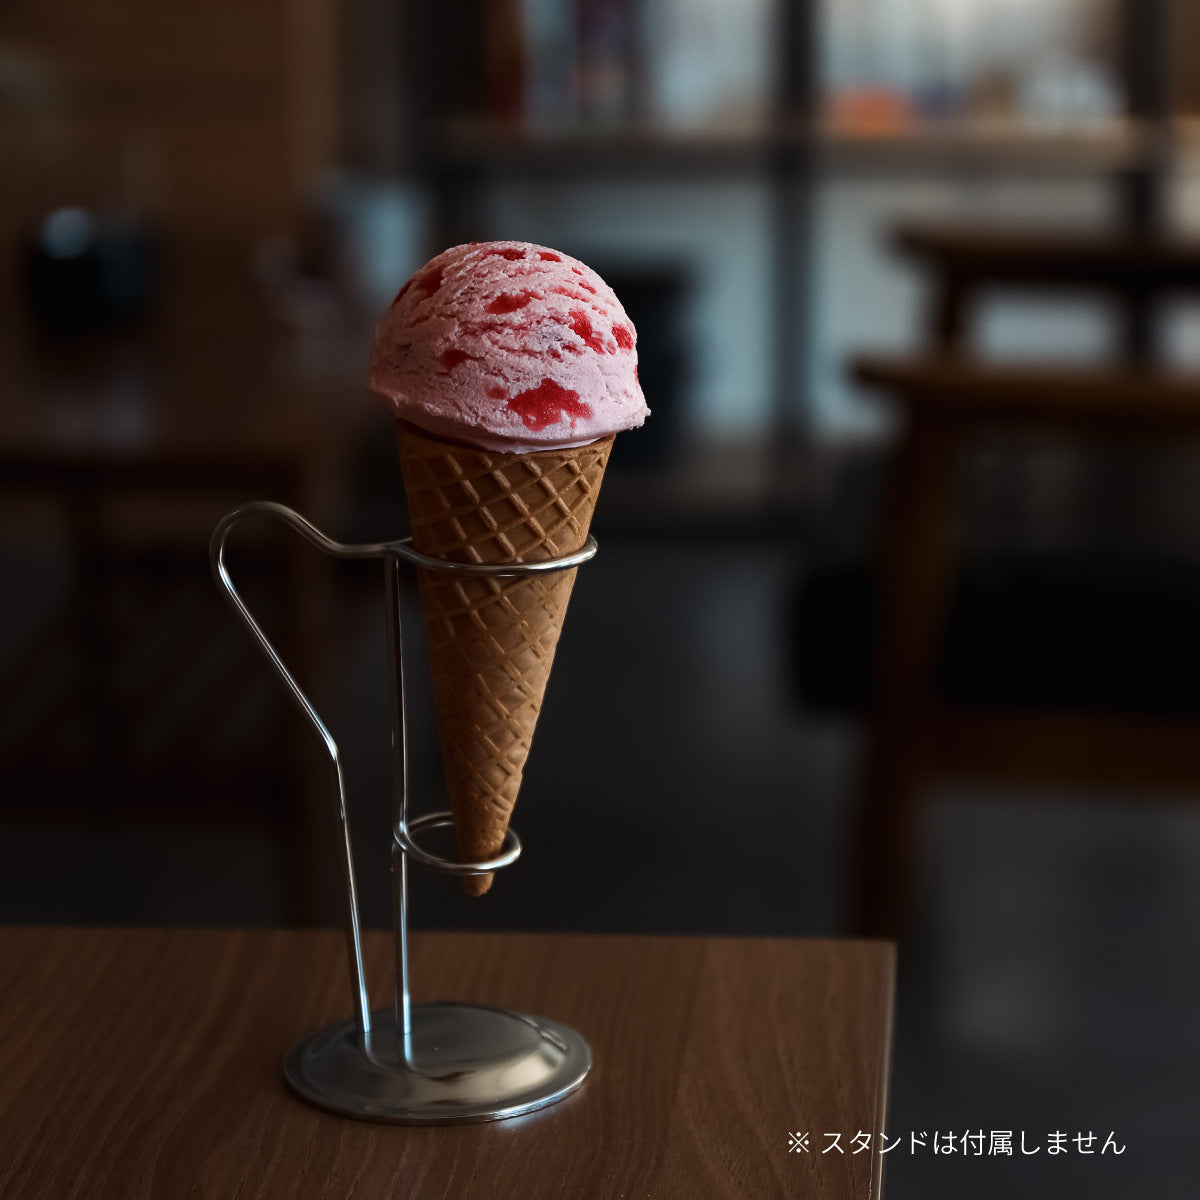 リアルな食品サンプル 食べられないアイス コーン付き ストロベリー × ストロベリー